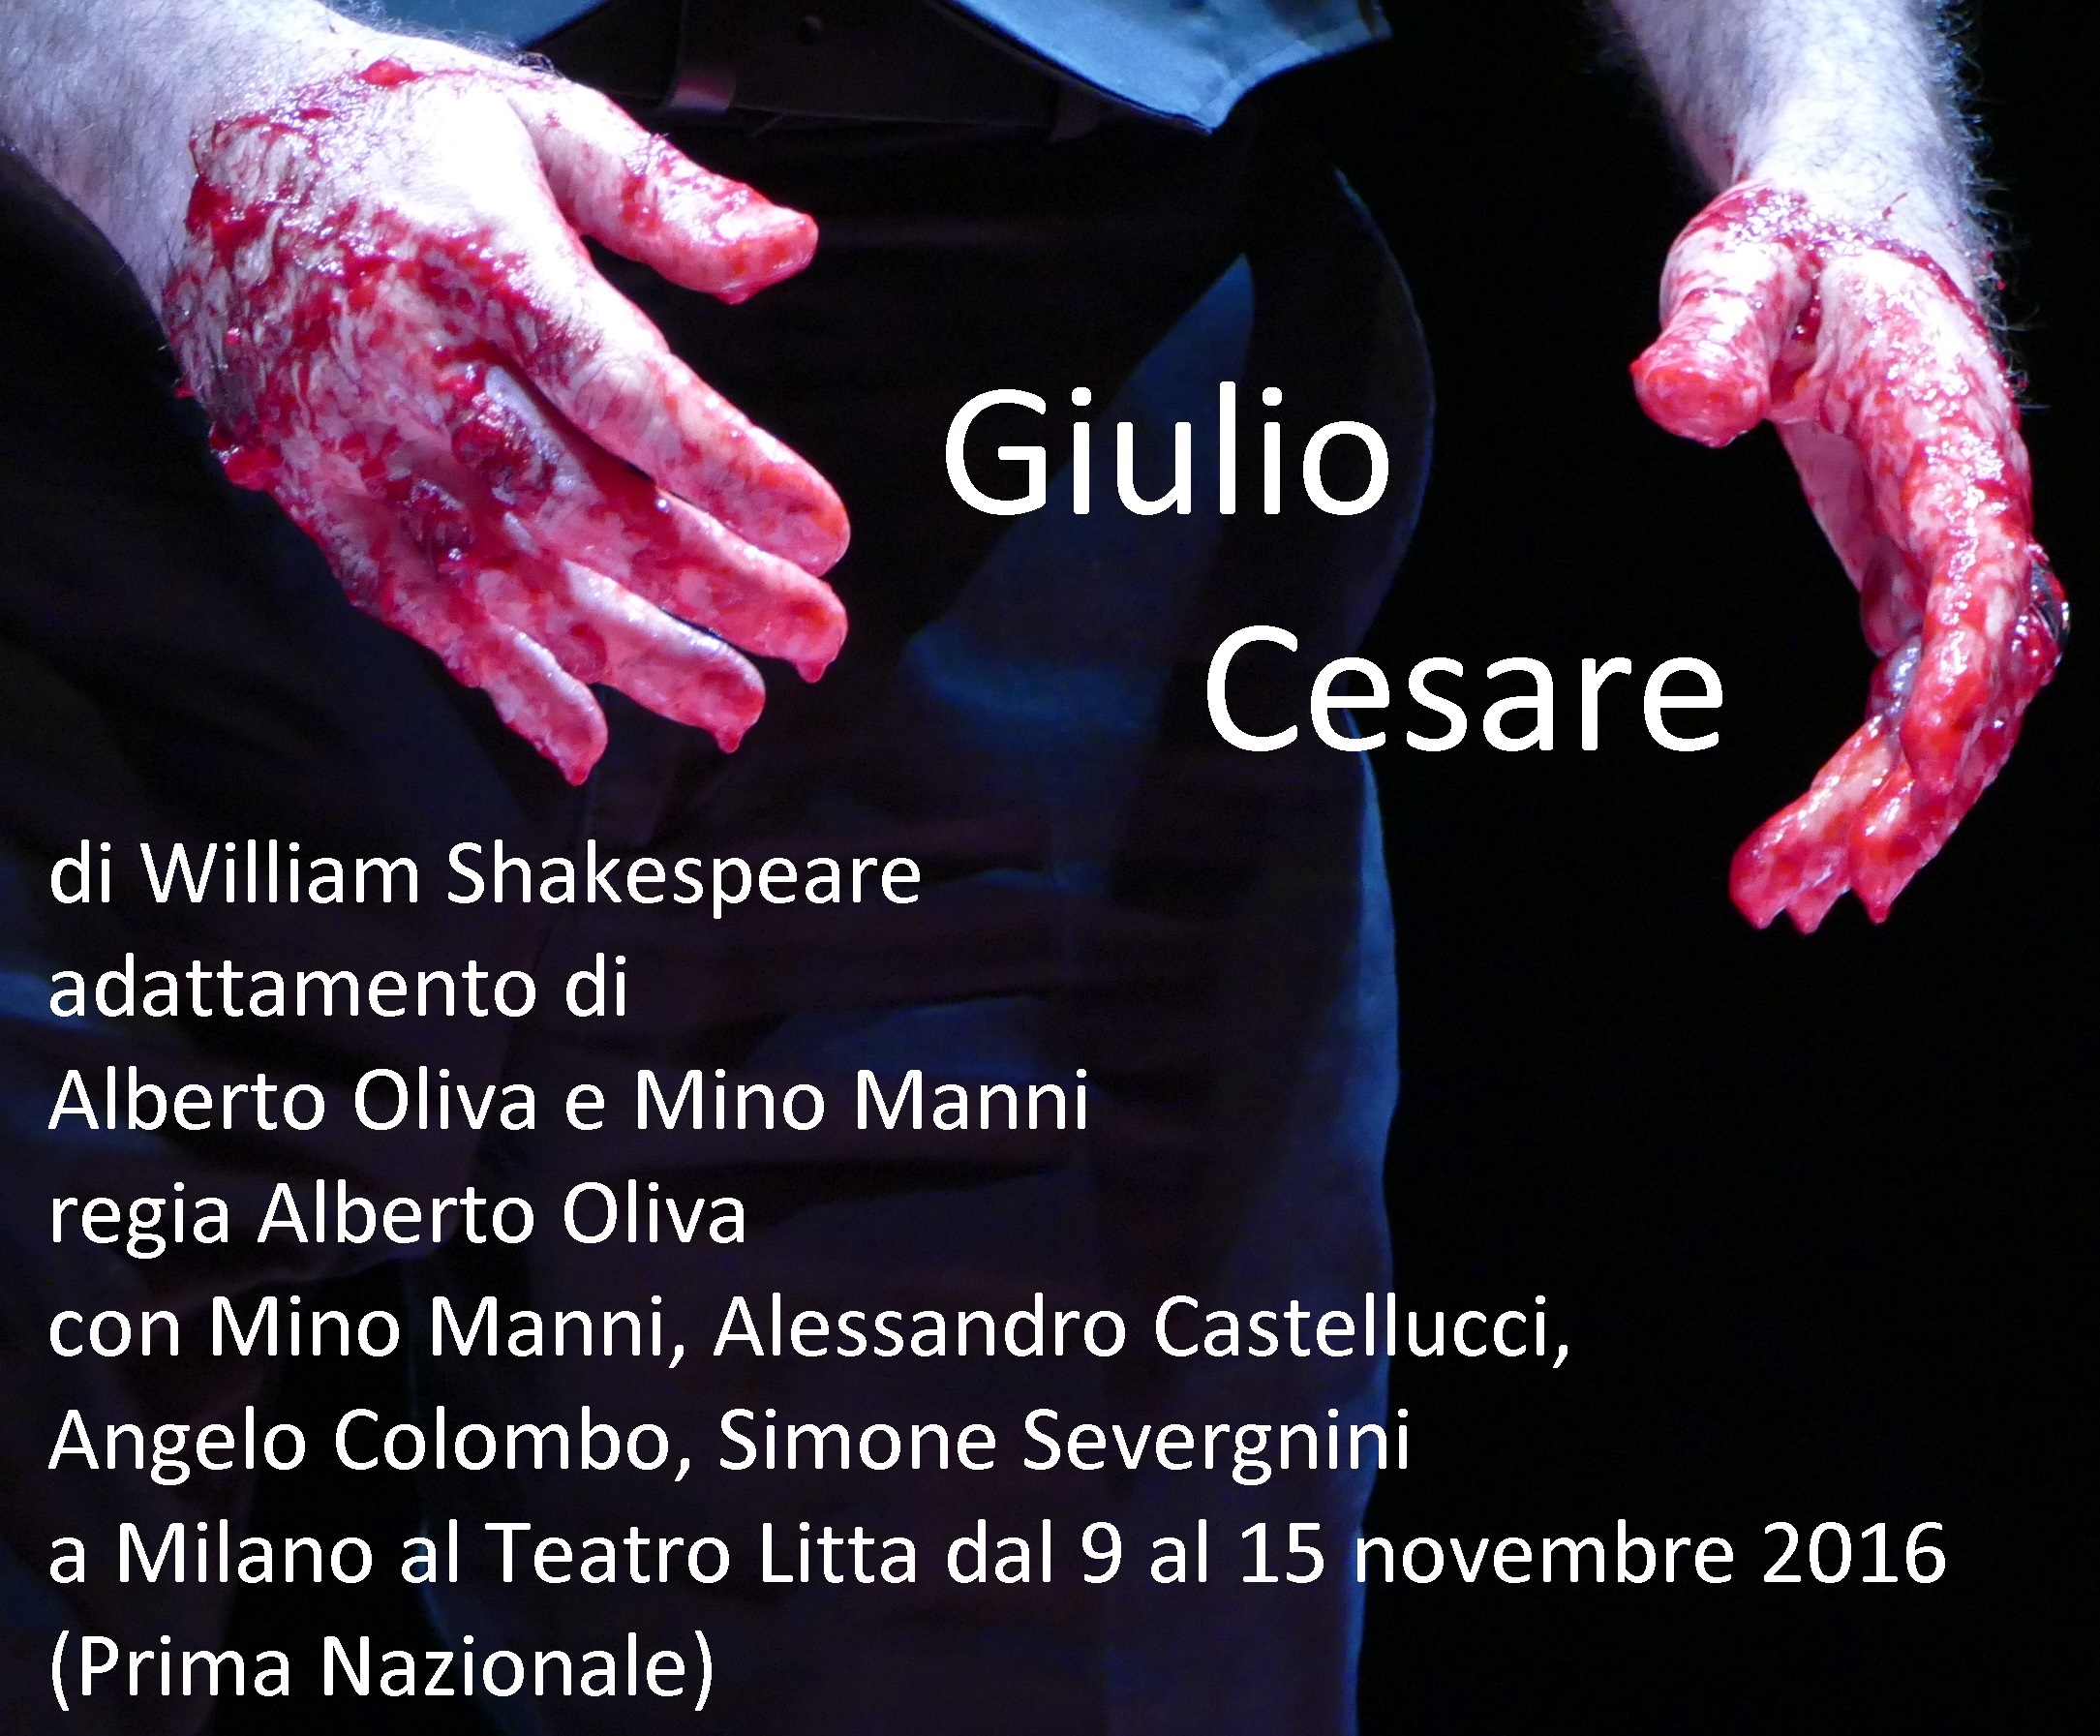 Teatro Litta Giulio Cesare Alberto Oliva